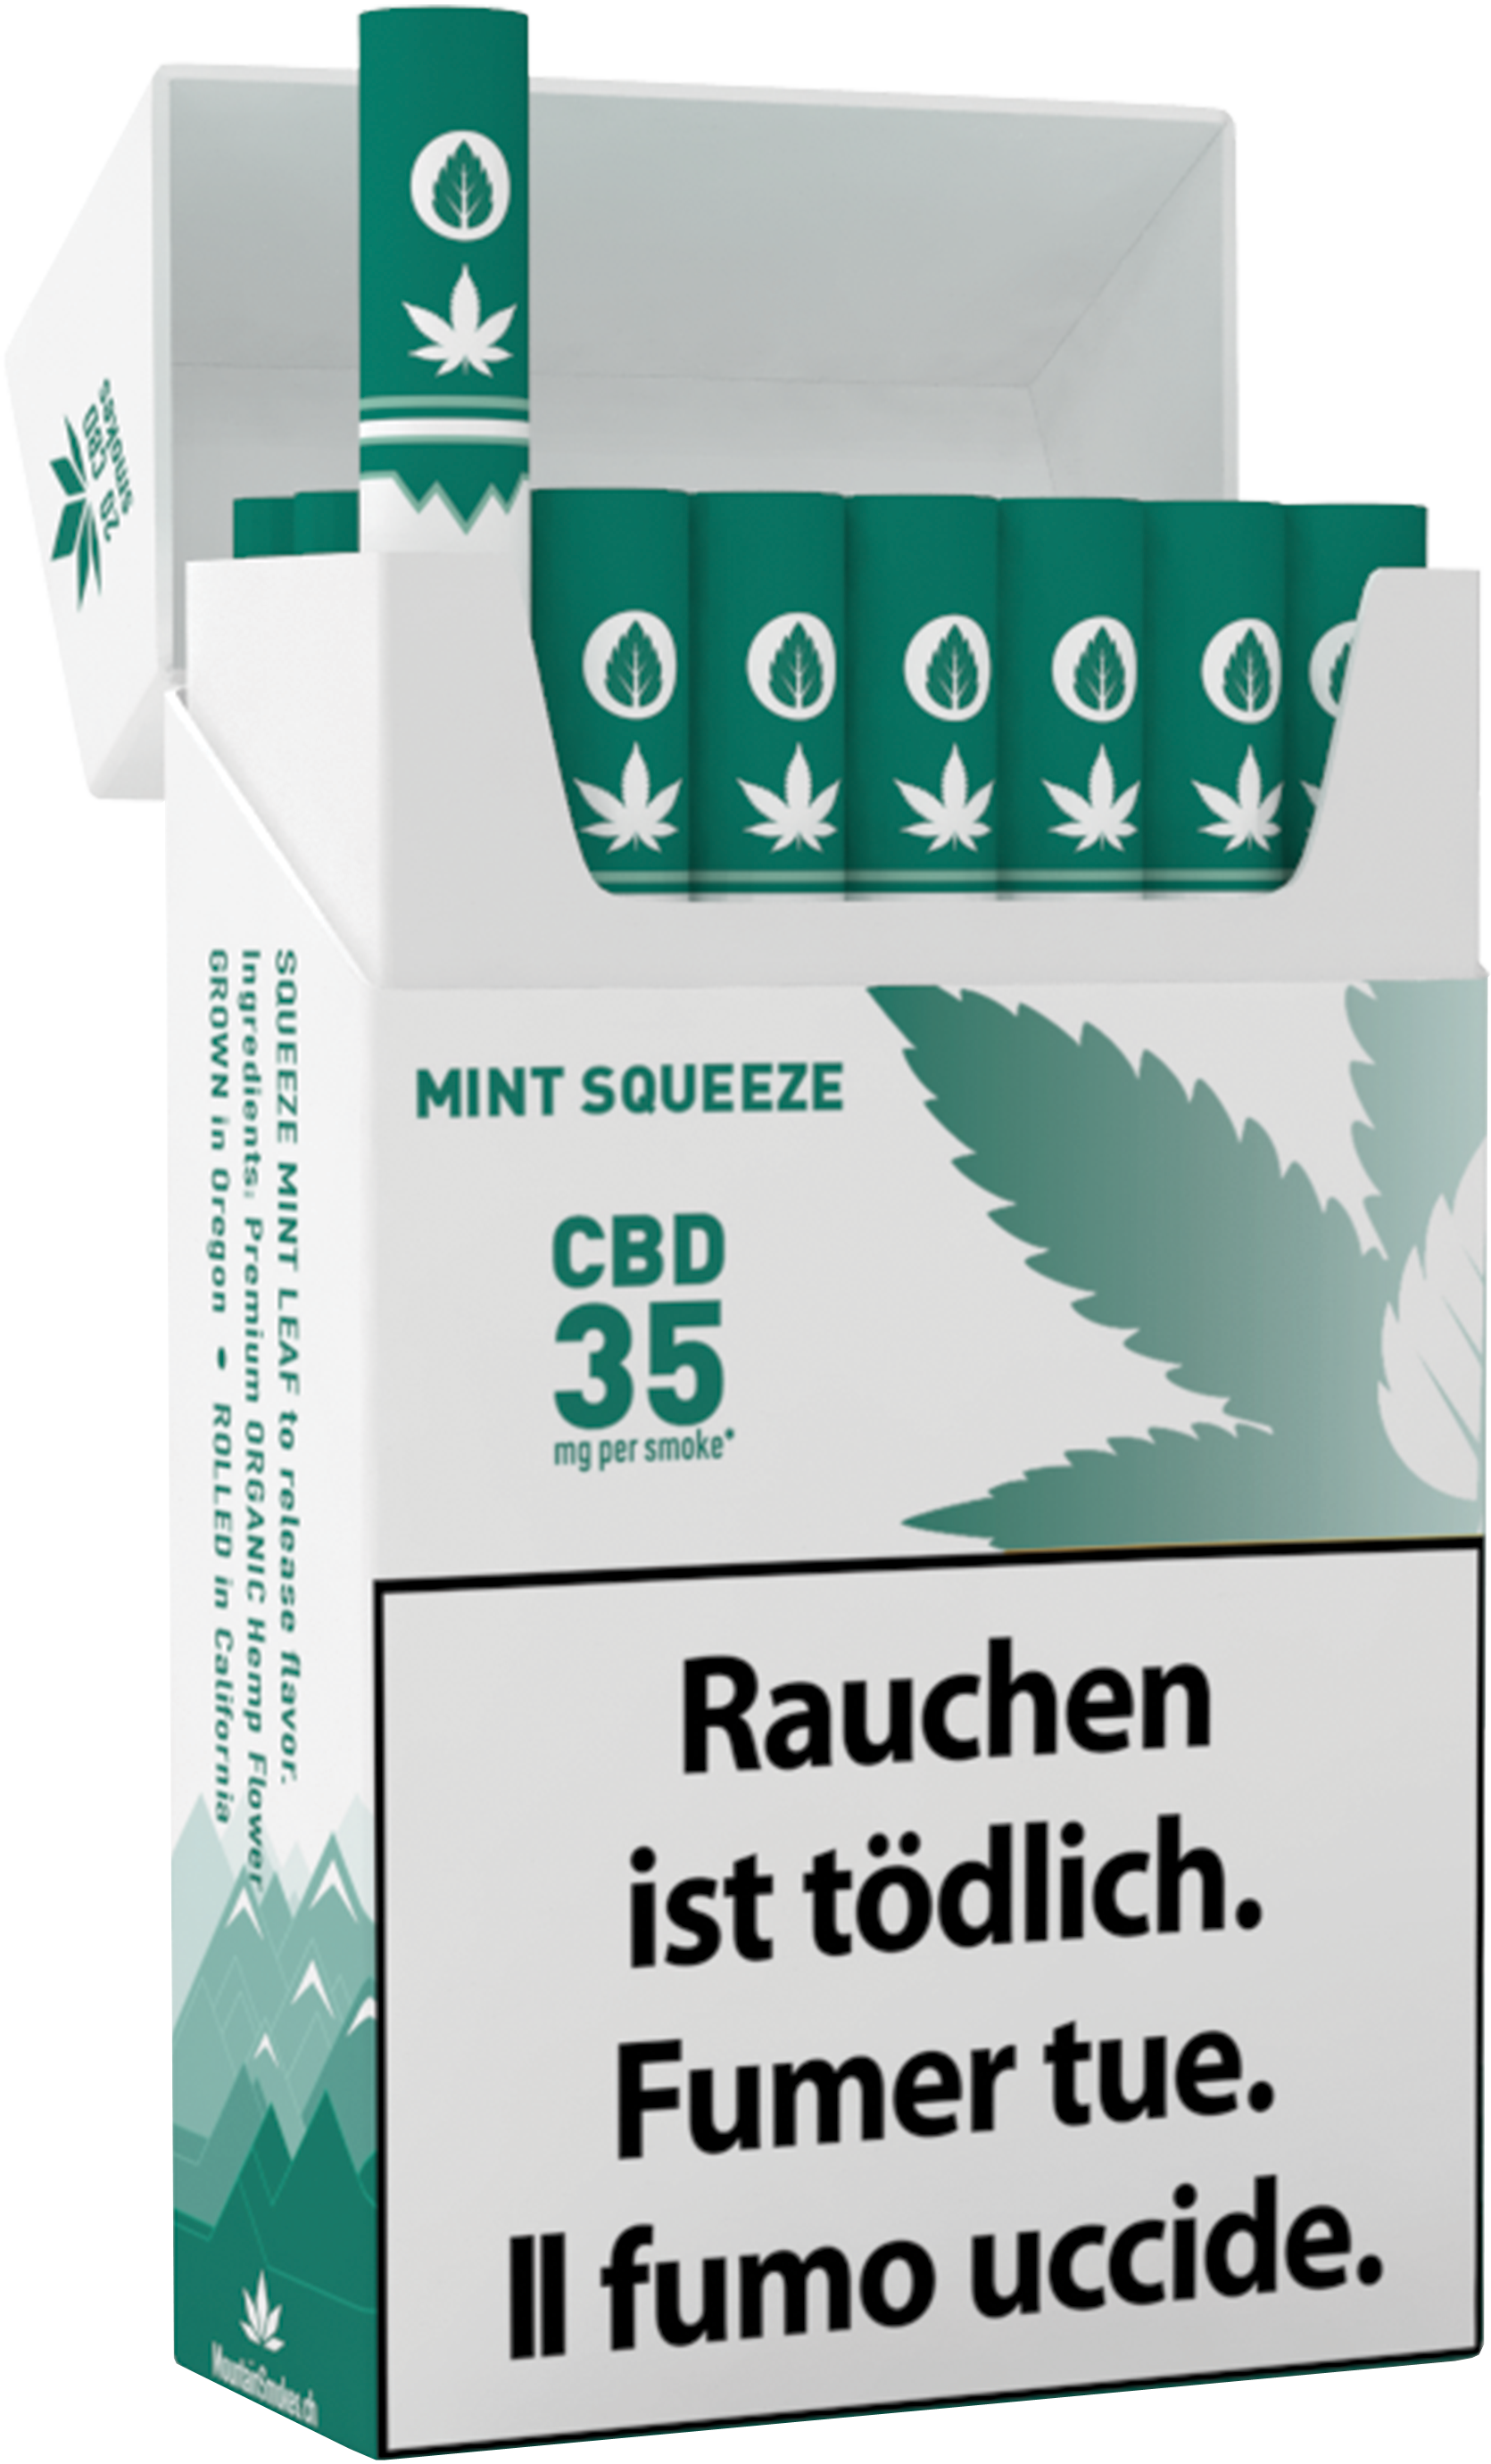 Image of Mountain Smokes CBD Zigaretten Mint Squeeze 35mg (1 Stk) bei CBD-Balance.ch